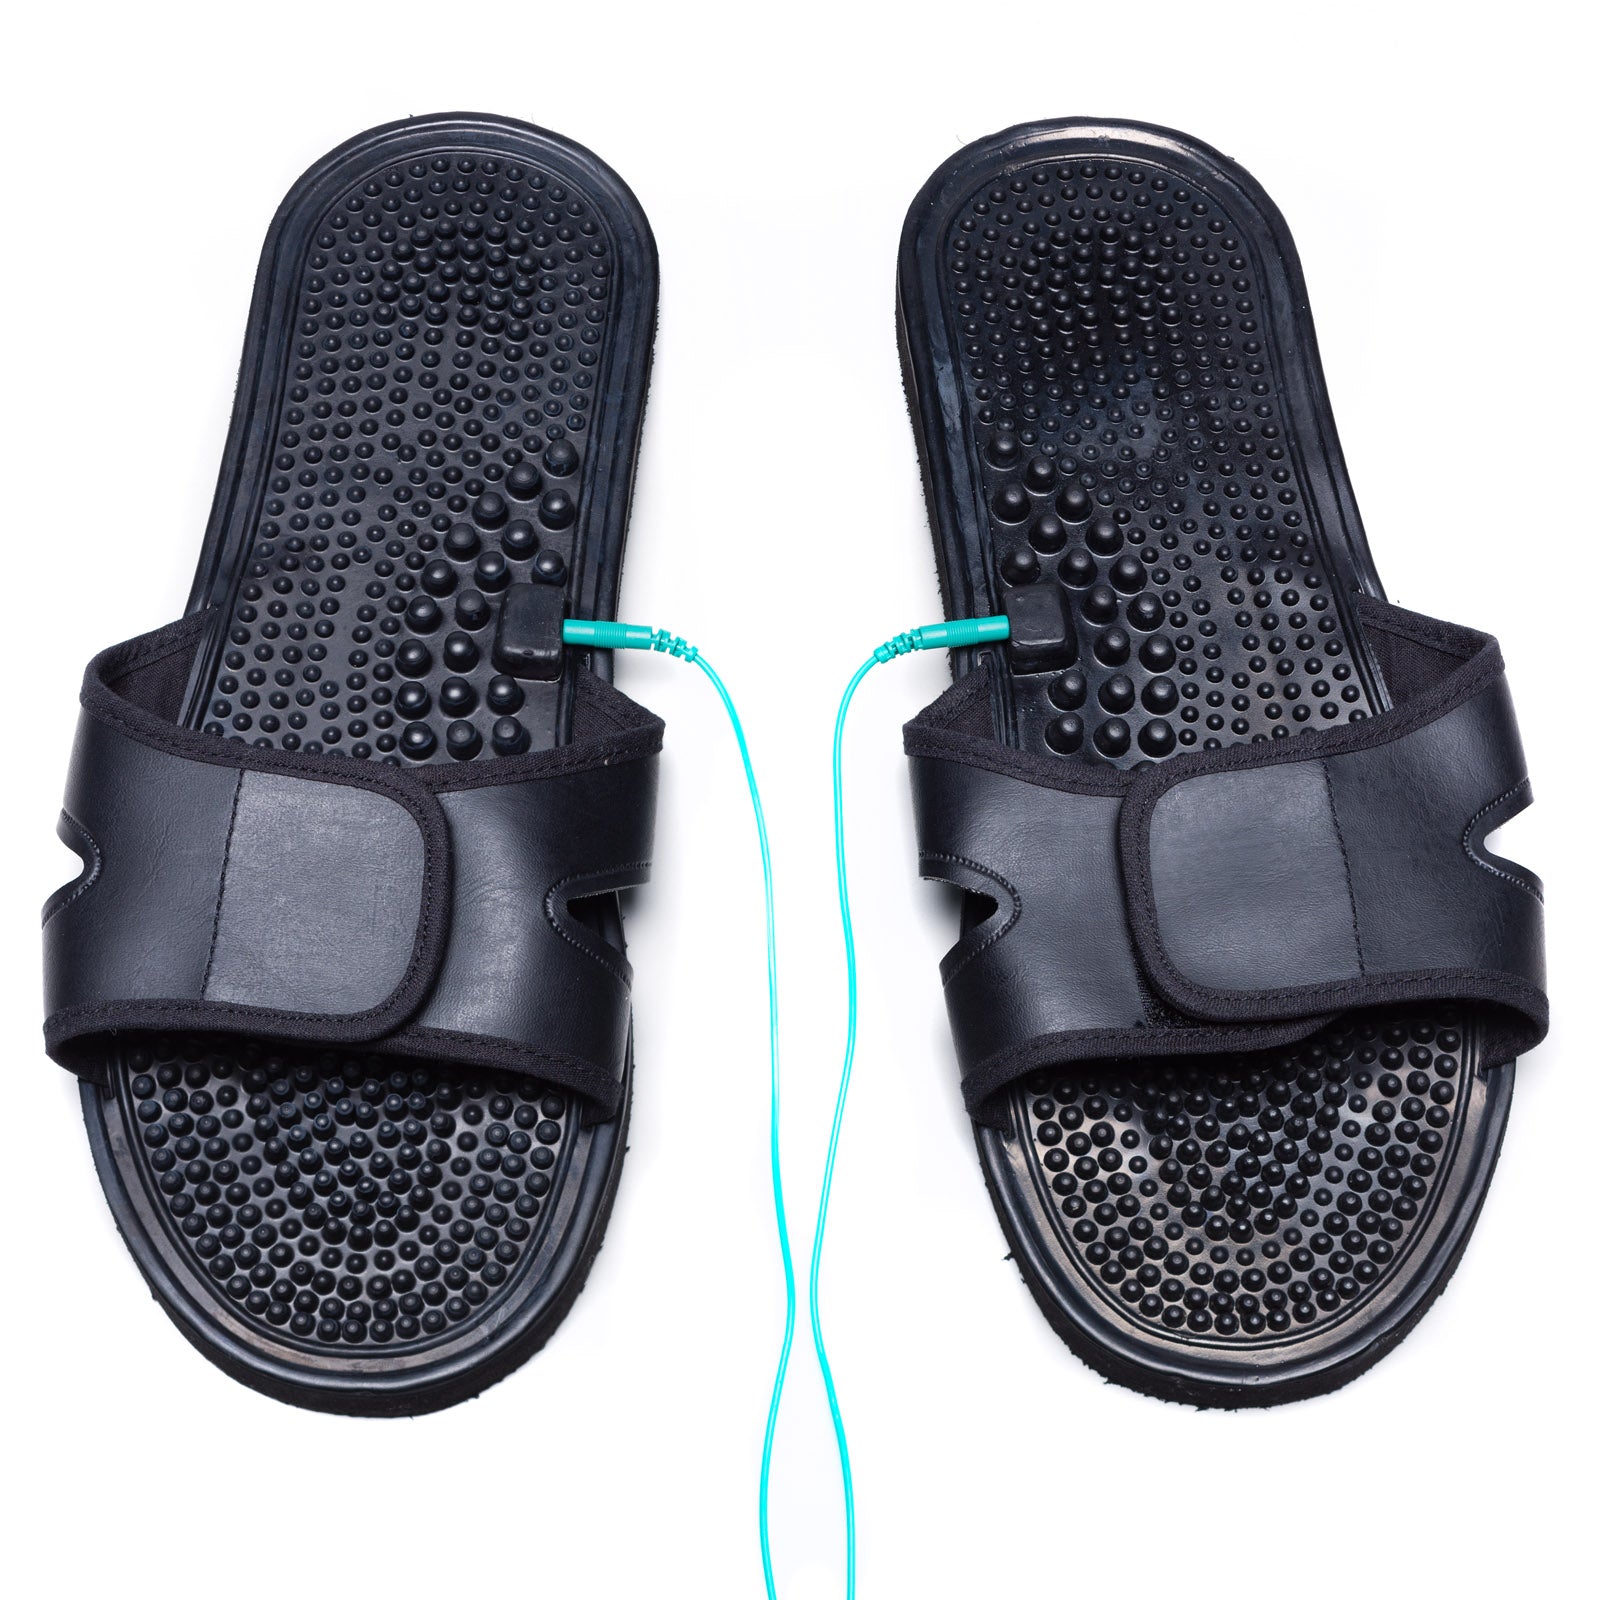 TESMED SLIPPERS ciabatte per la stimolazione del piede, da utilizzare in abbinamento ad un dispositivo TESMED. Durante il trattamento, si avverte un piacevole massaggio dal piede fino al ginocchio